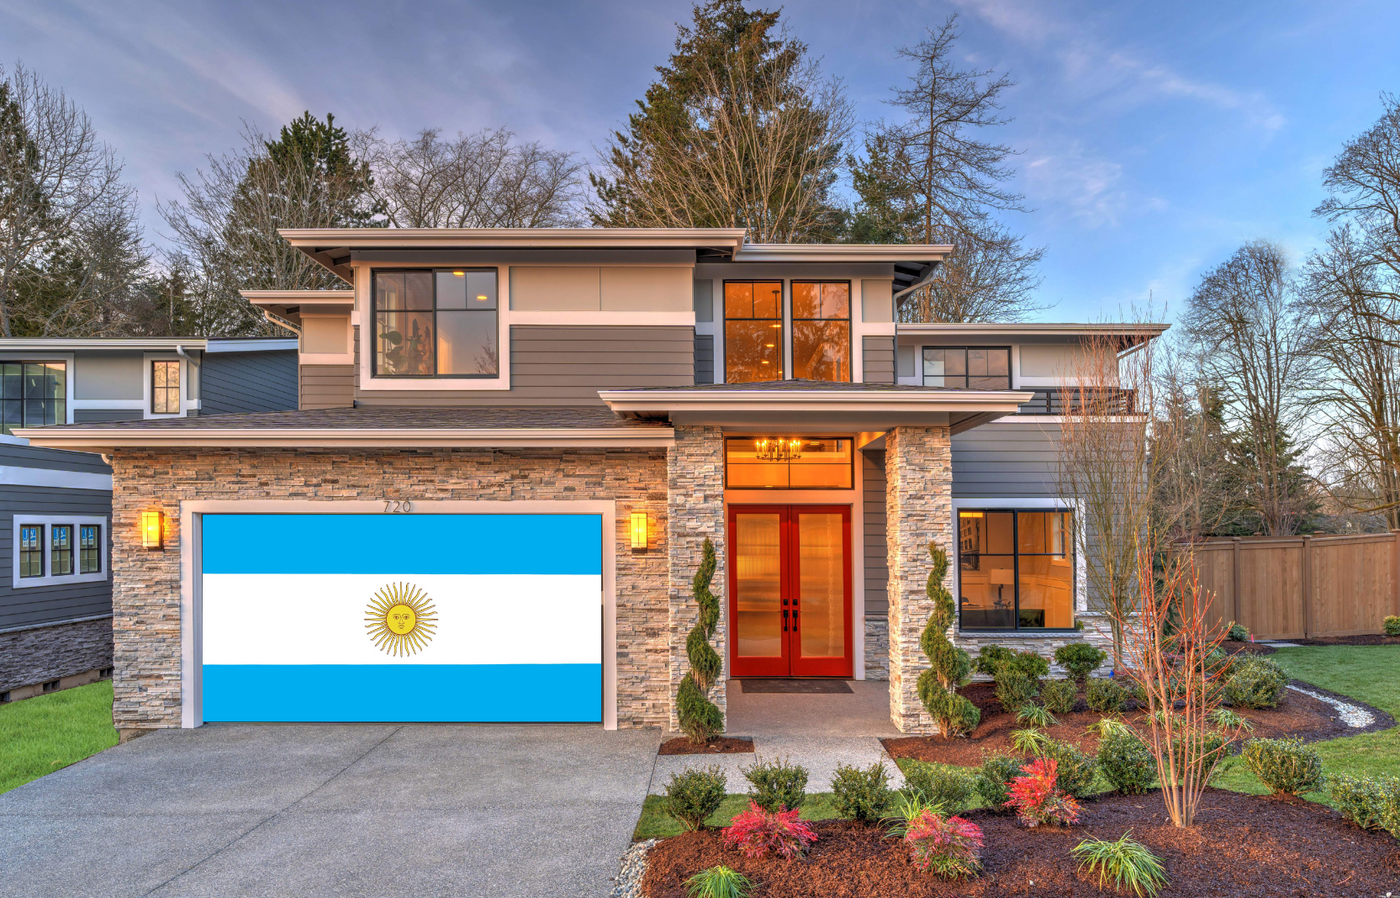 Argentina Flag Garage Door Cover